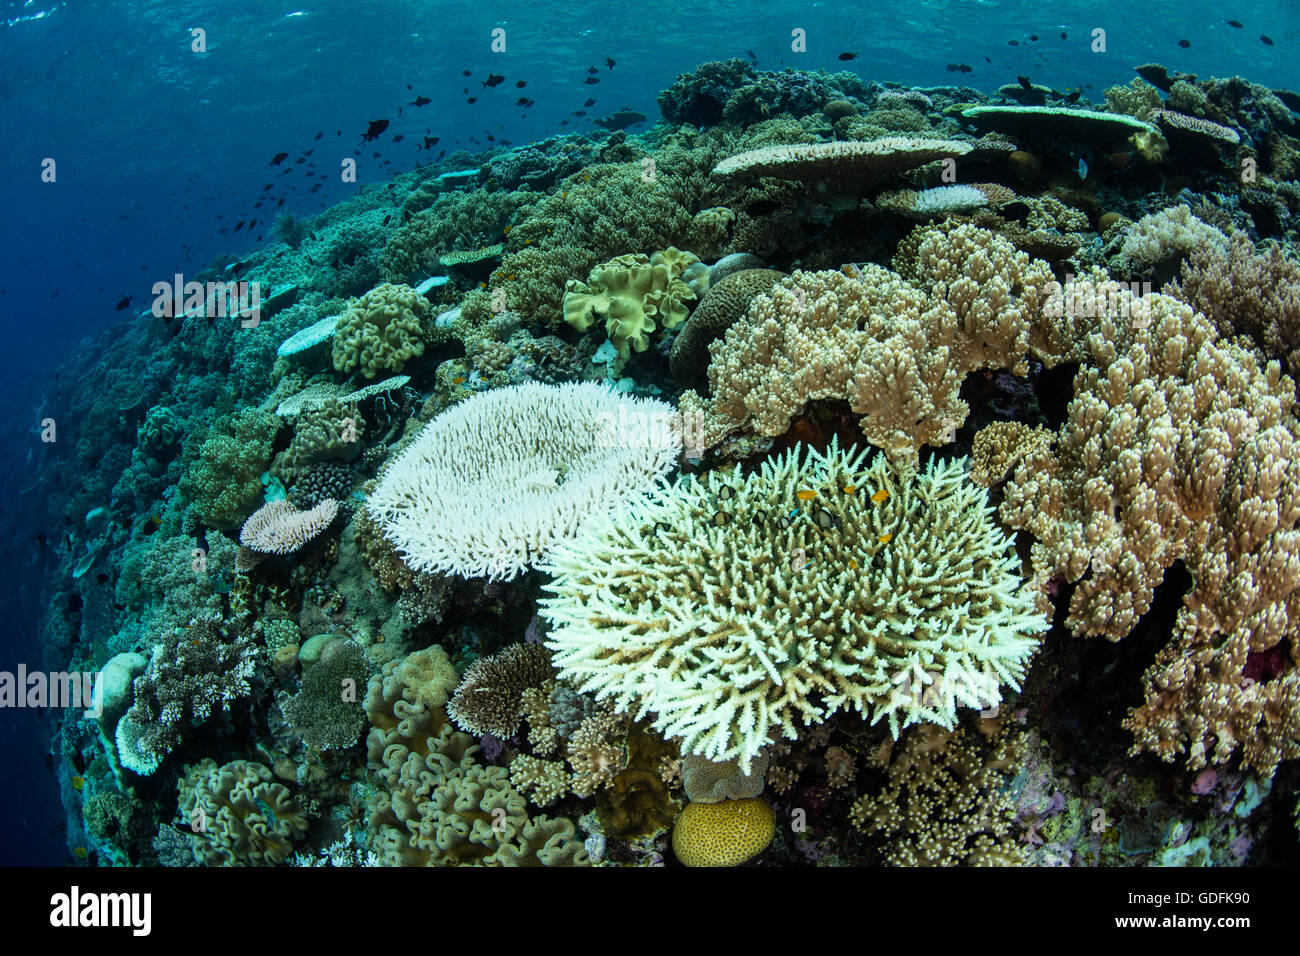 Bajo tensión de alta temperatura del mar, las colonias de coral comienzan a lejía expulsan las algas simbióticas en sus tejidos. Foto de stock